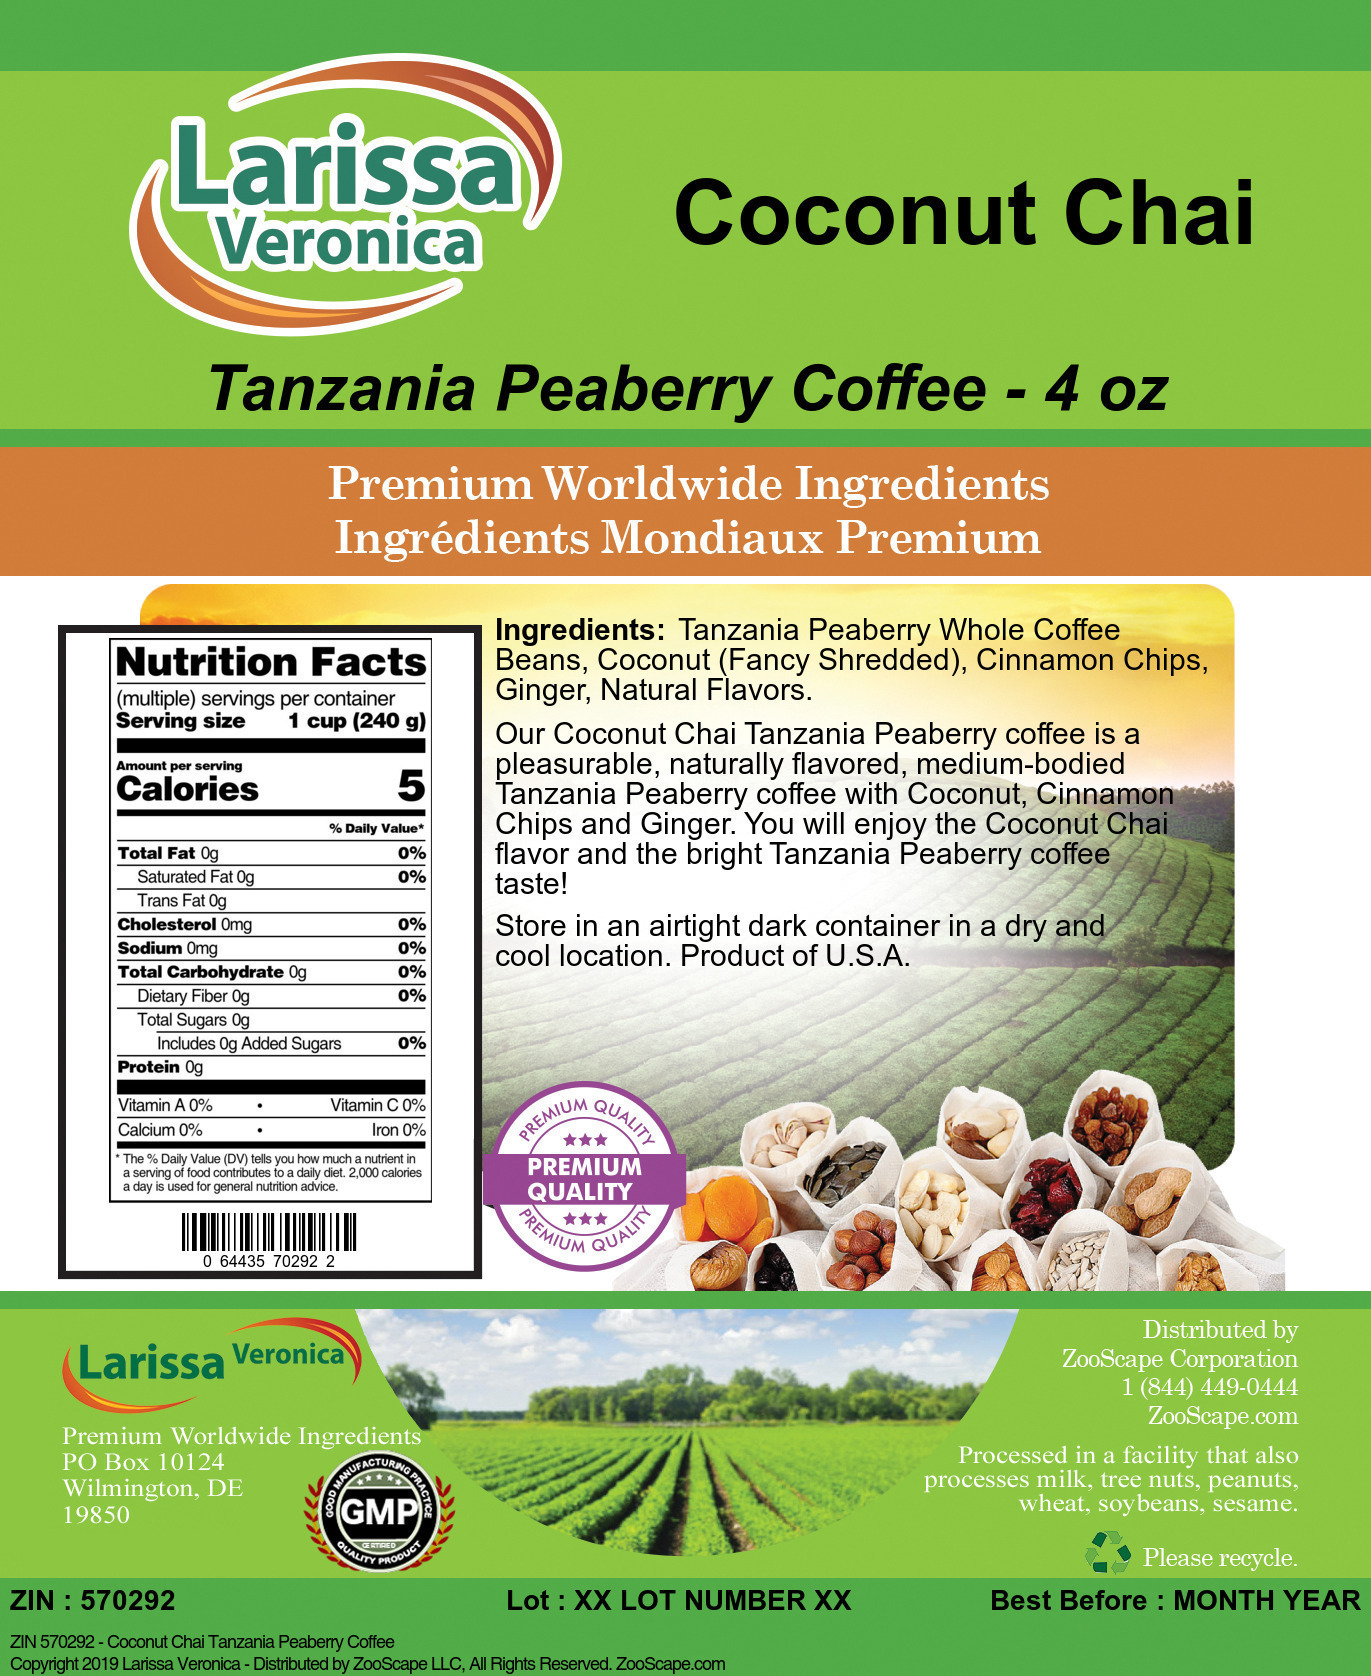 Coconut Chai Tanzania Peaberry Coffee - Label